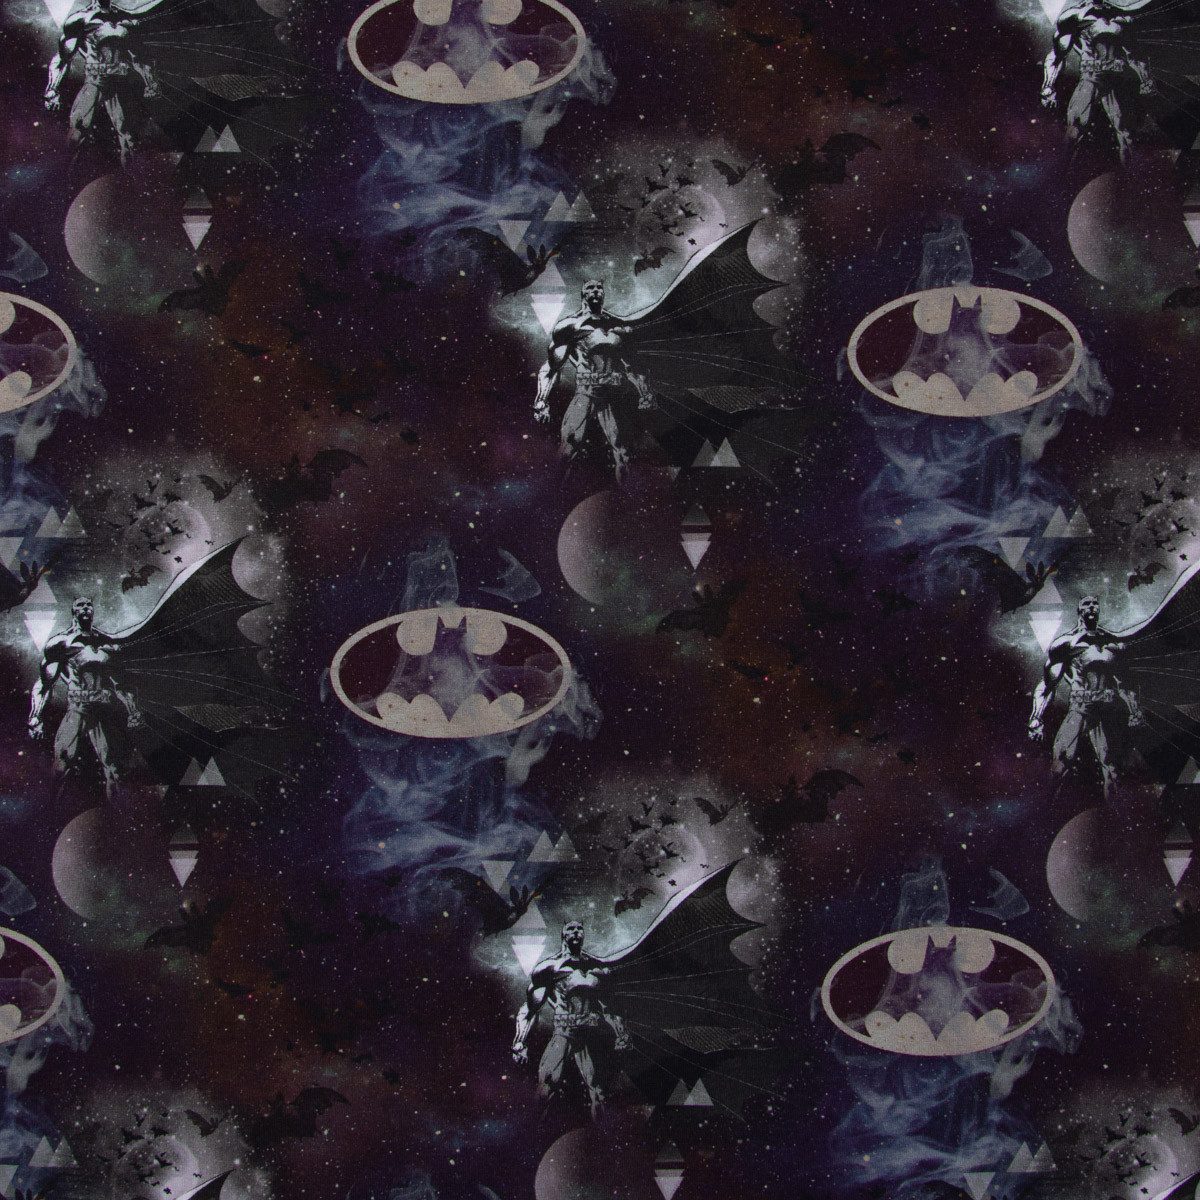 SCHÖNER LEBEN. Stoff Baumwolljersey Digitaldruck Batman™© Mond schwarz grau 1,5m Breite, Digitaldruck